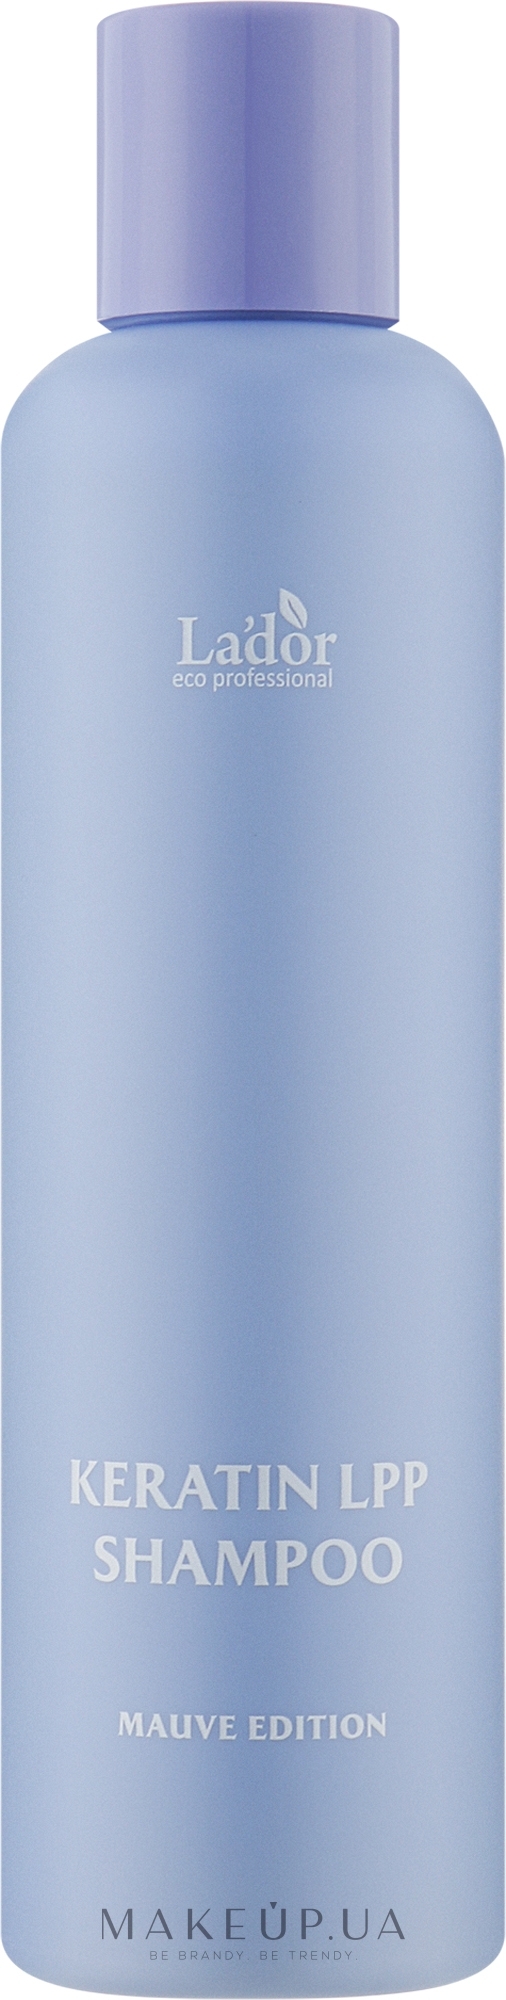 Протеїновий шампунь для волосся з кератином - La'dor Keratin LPP Shampoo Mauve Edition — фото 200ml